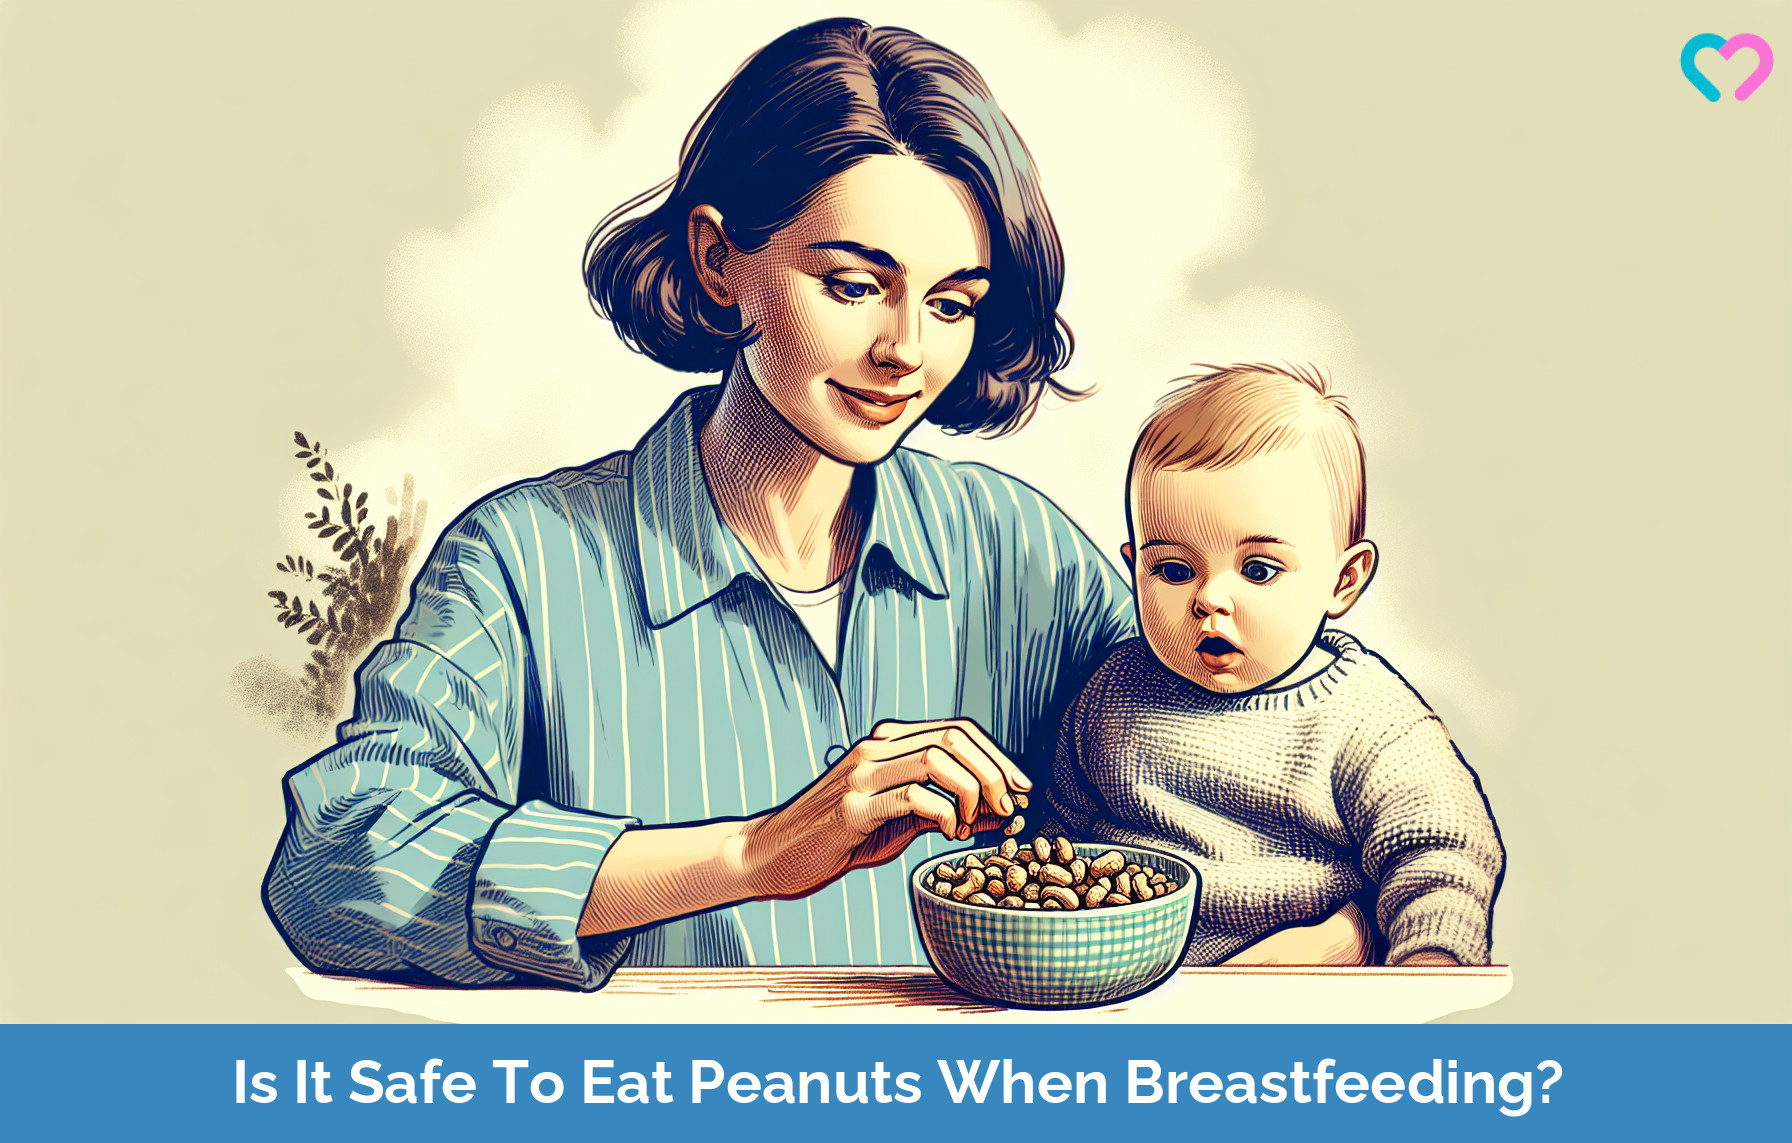 Peanuts While Breastfeeding_illustration